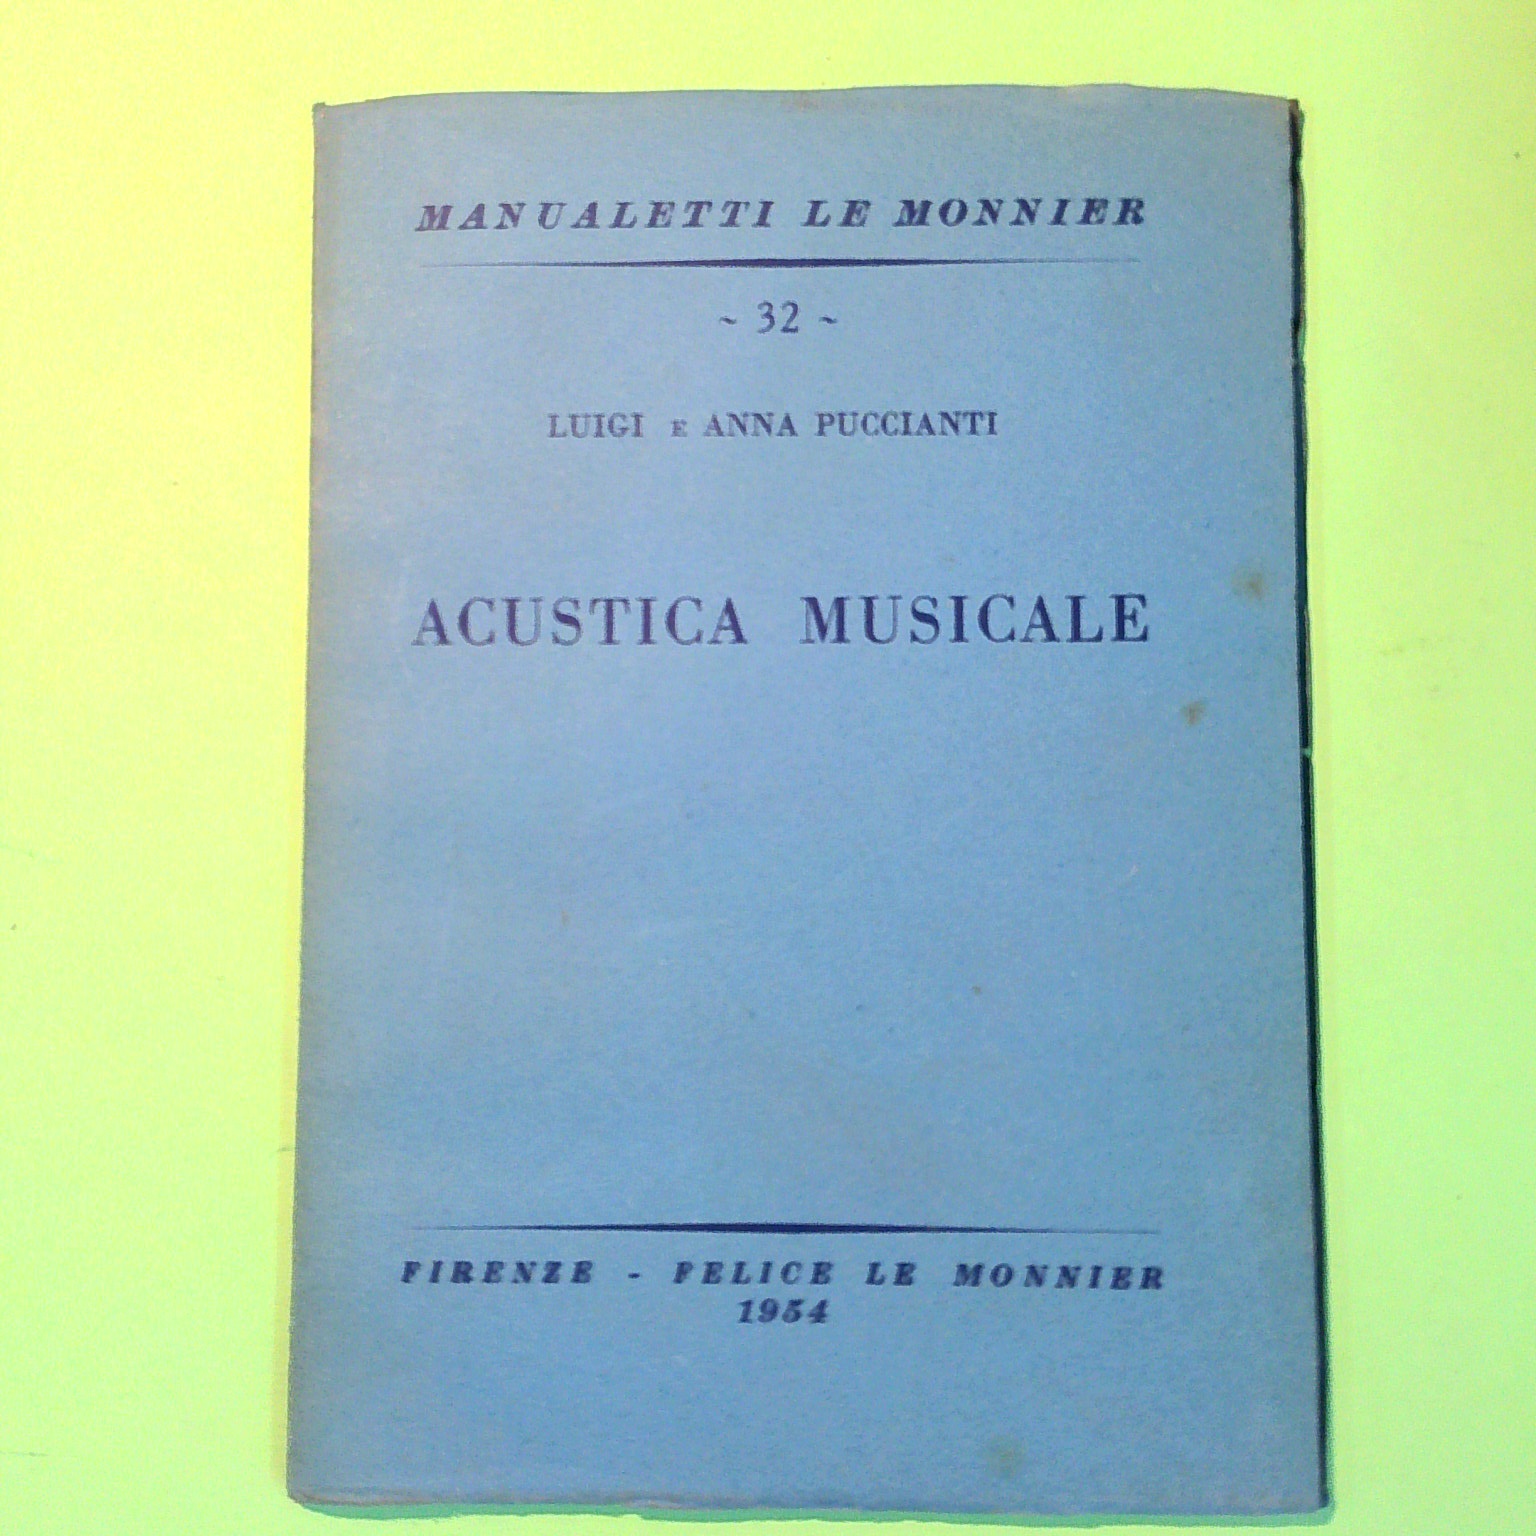 ACUSTICA MUSICALE PUCCIANTI LE MONNIER 1954